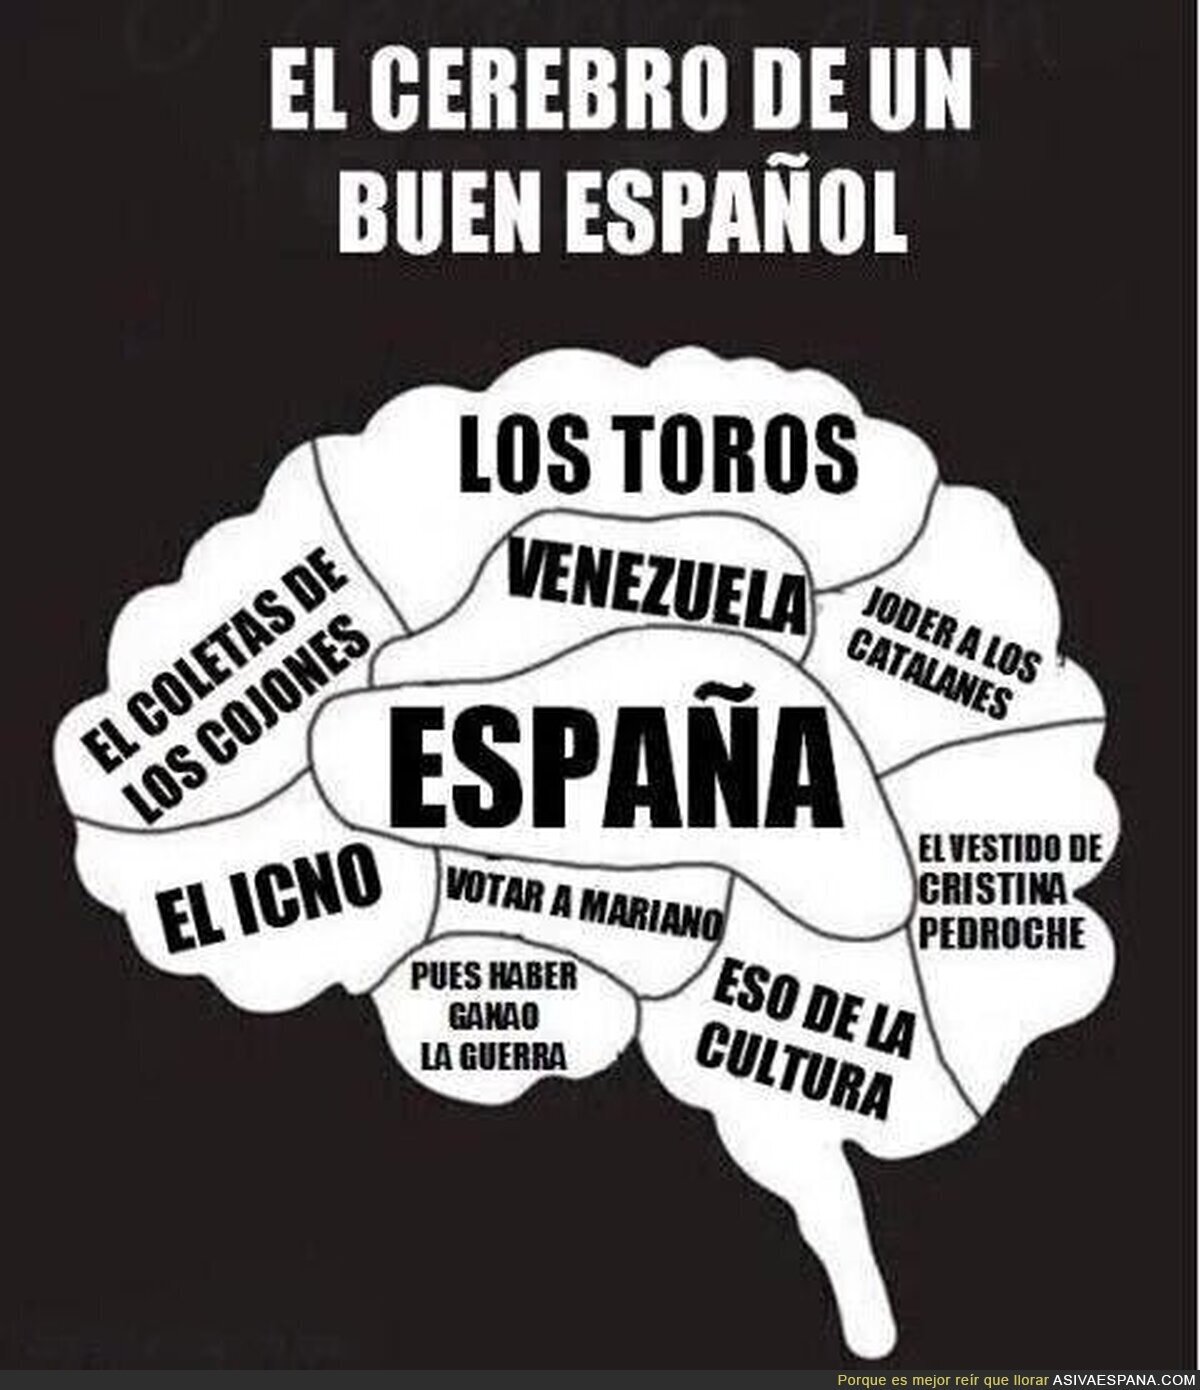 Representación gráfica del cerebro de un buen español